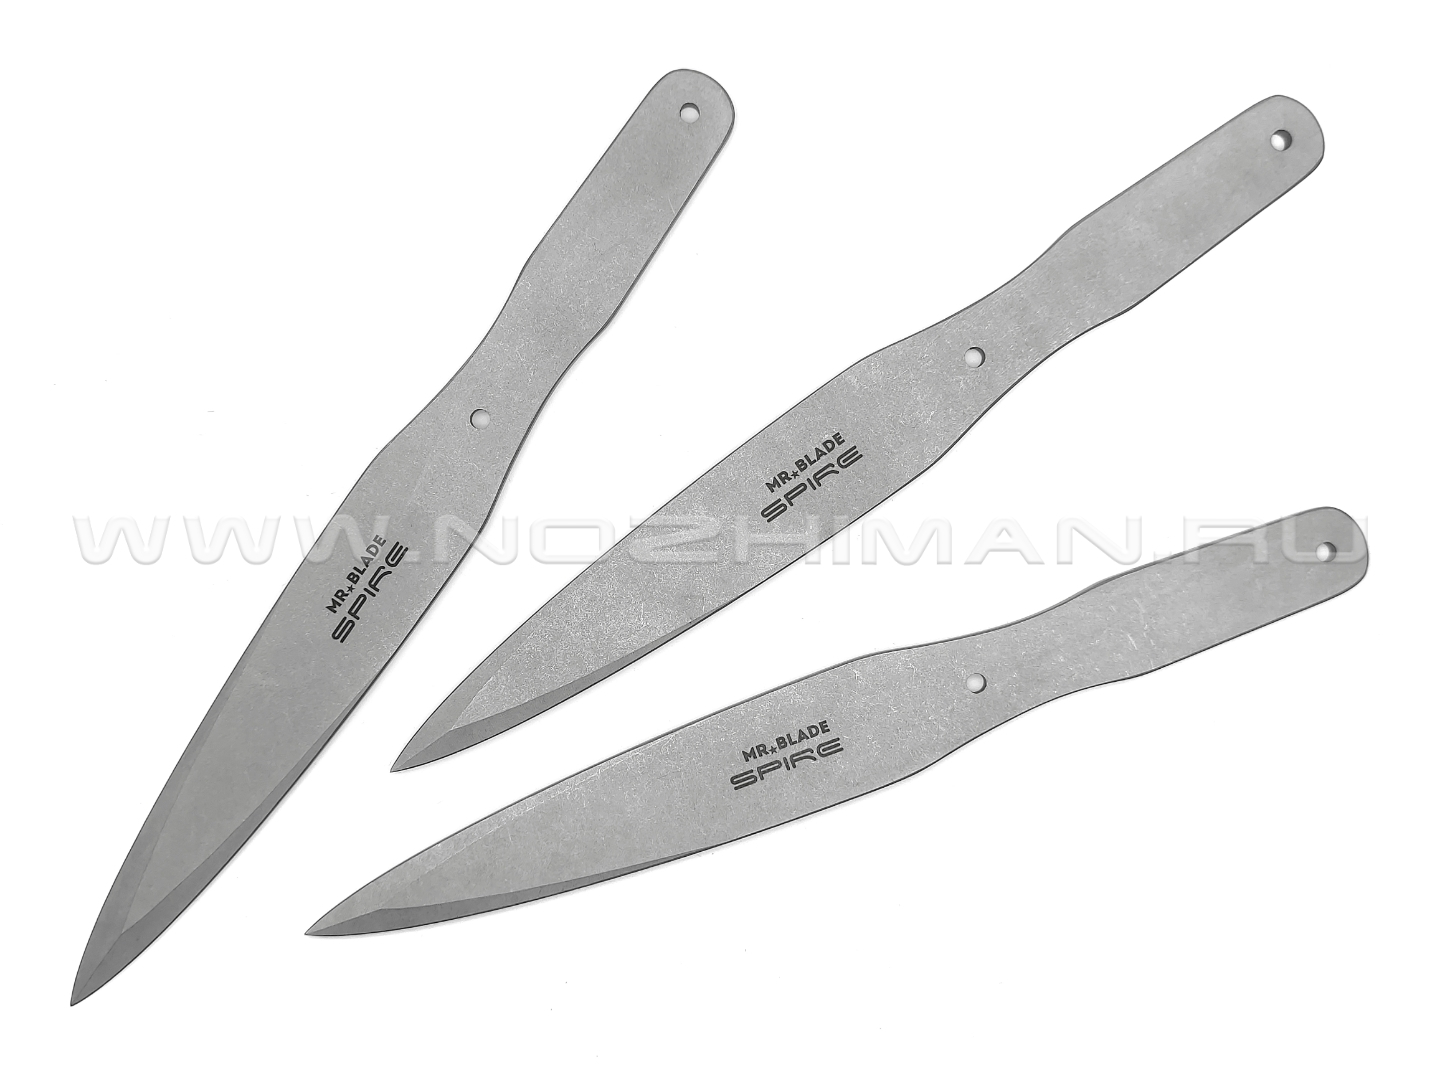 Набор метательных ножей Mr.Blade Spire stonewash 3 шт